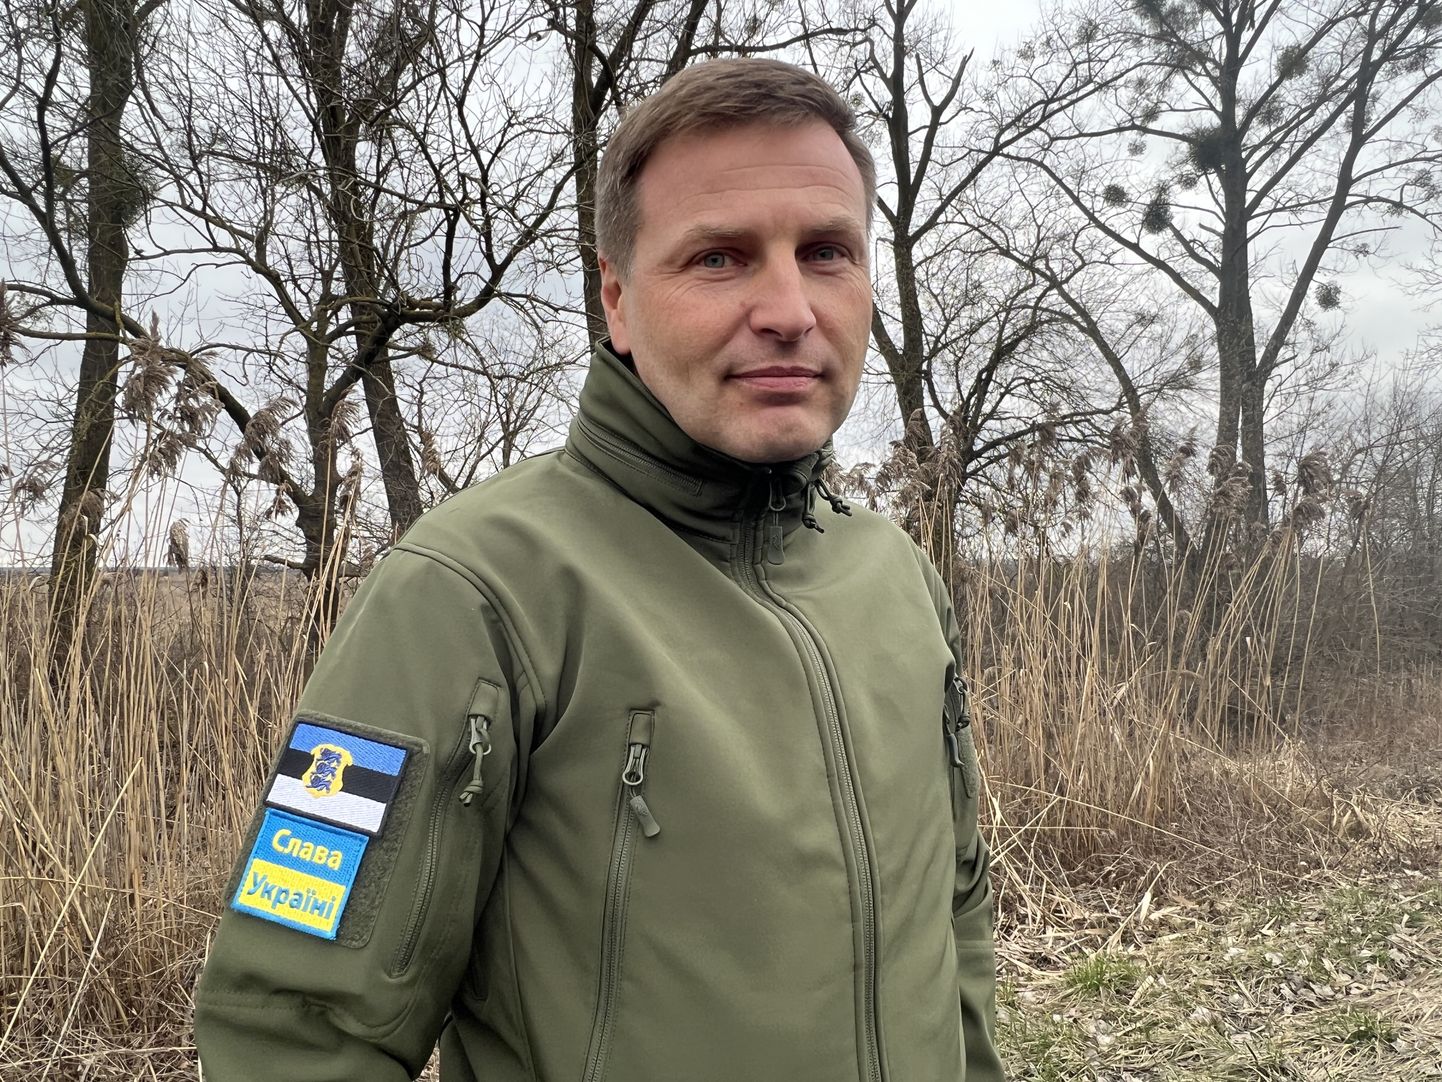 Министр обороны Эстонии Ханно Певкур вчера в Украине во время остановки по дороге в Киев, где сегодня он встретился с министром обороны Украины и принял участие в форуме по безопасности.